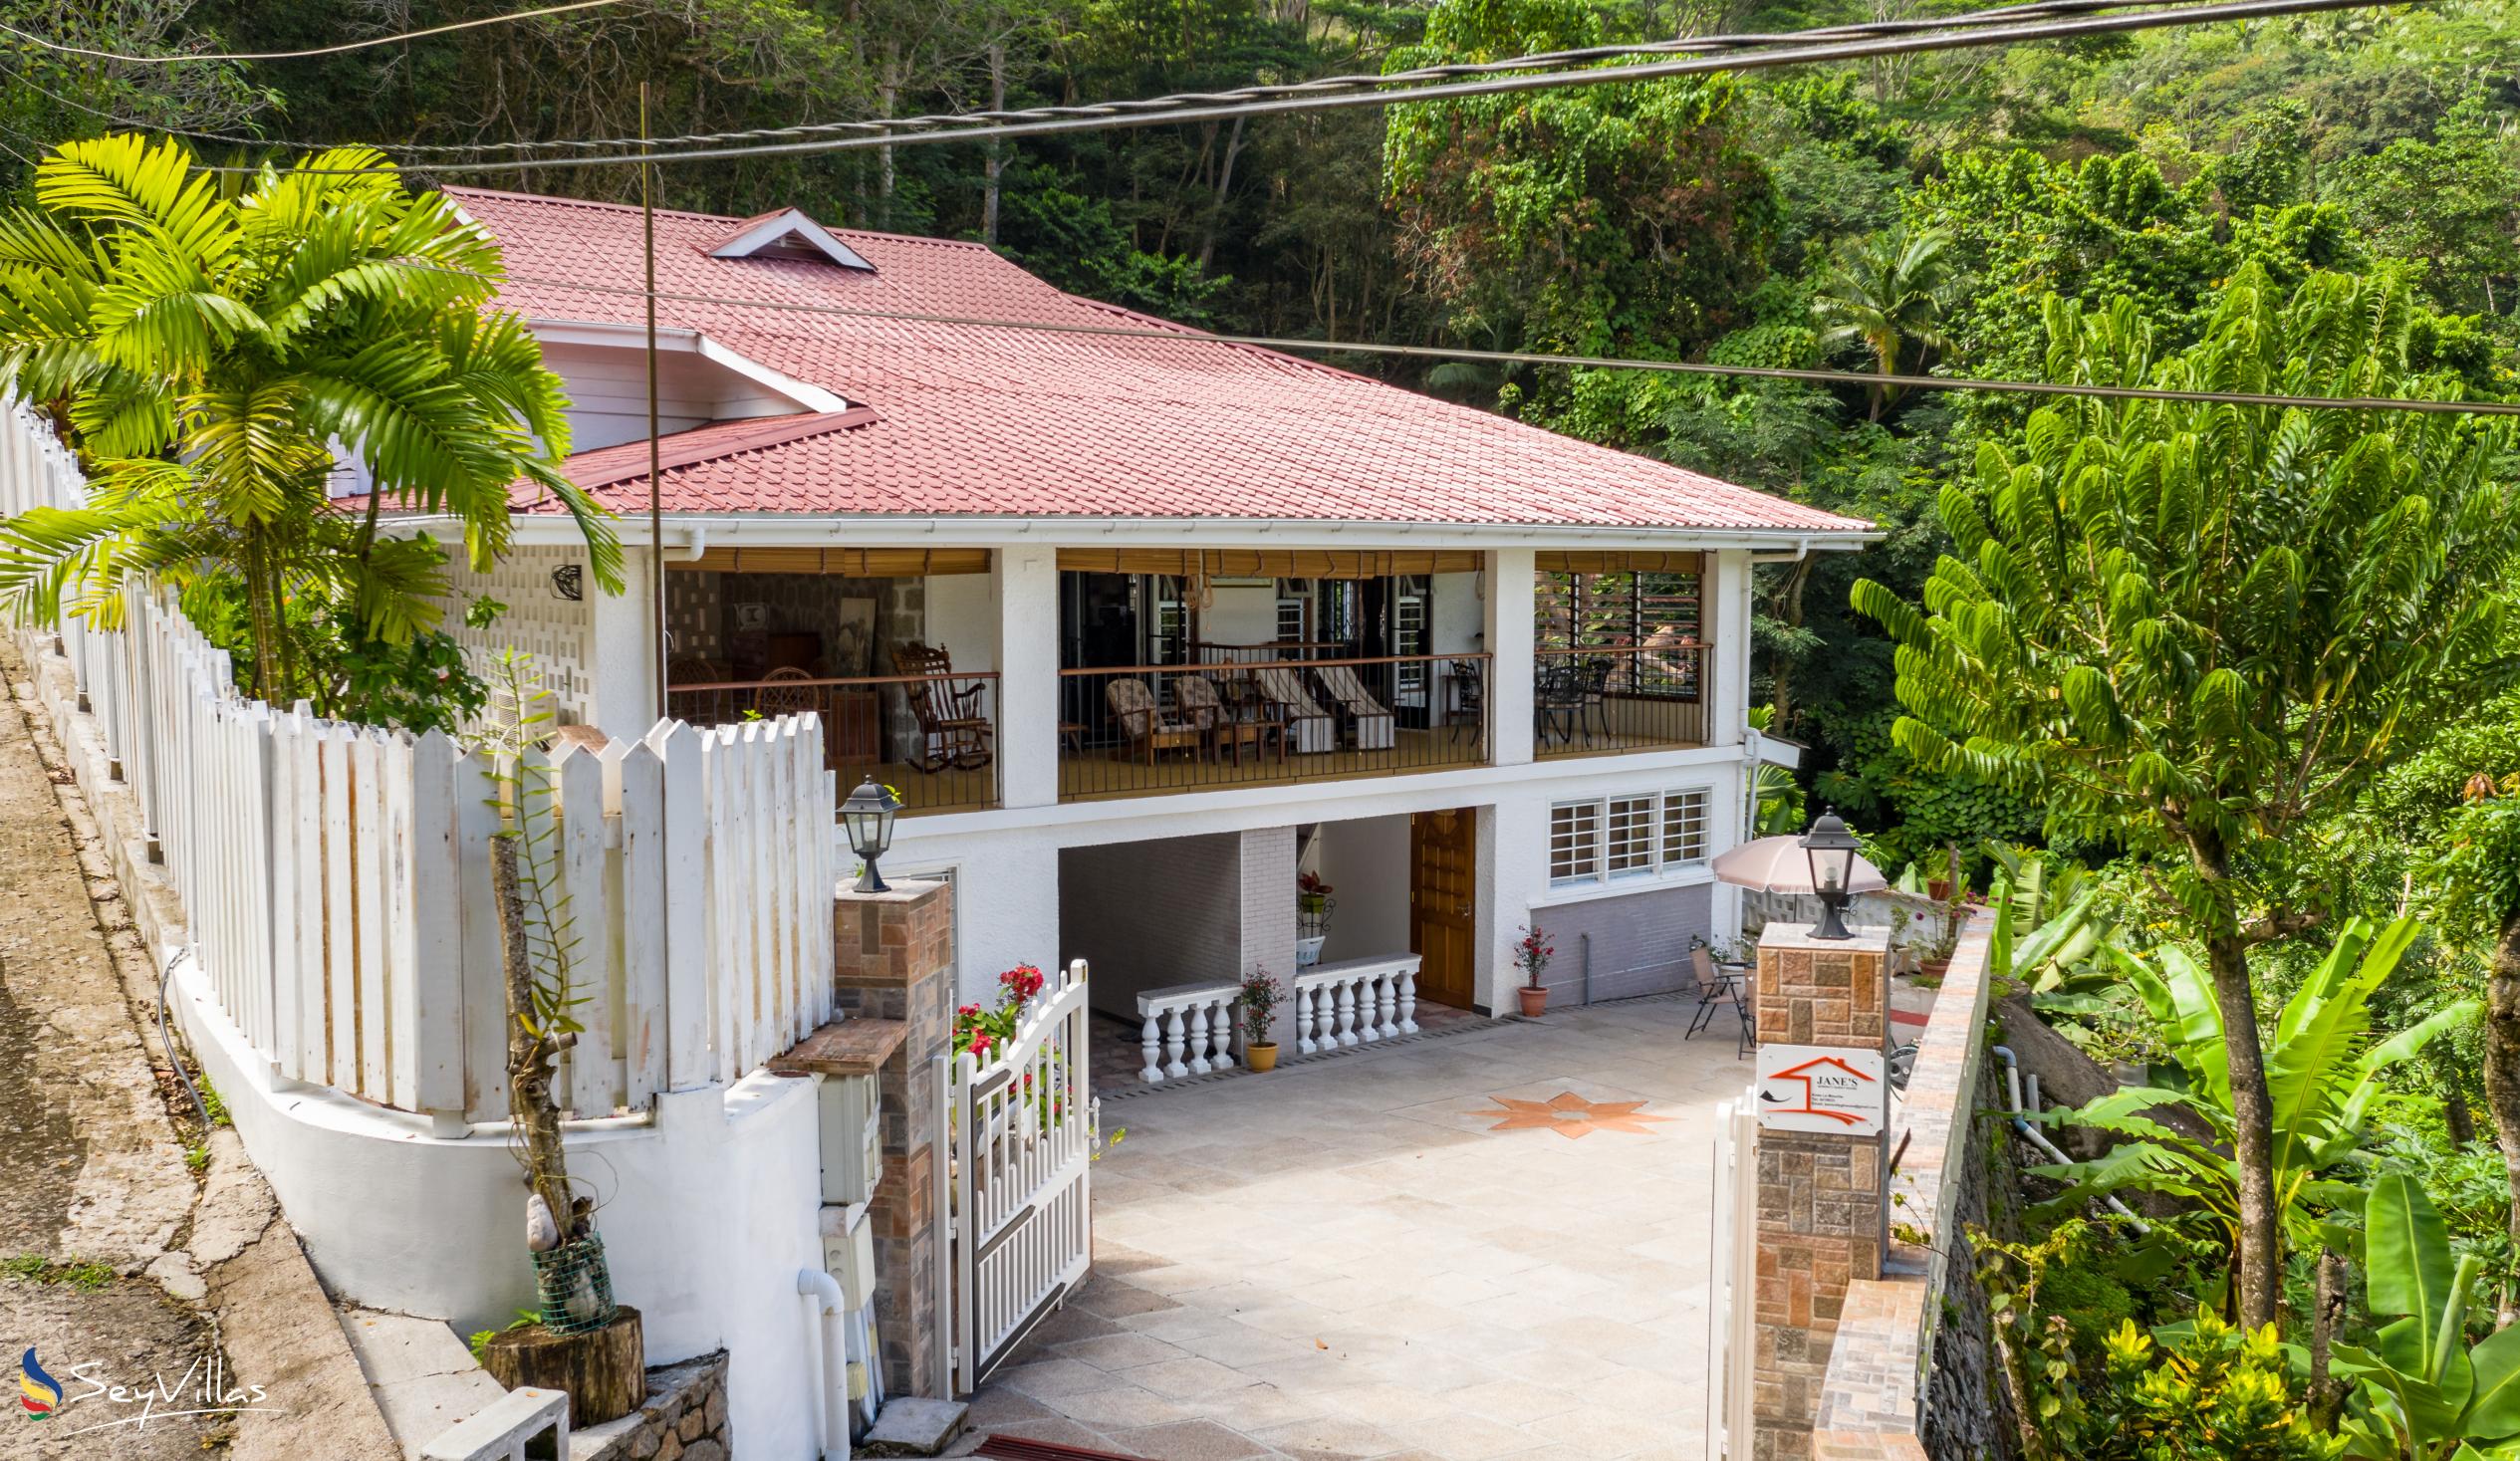 Foto 4: Jane's Serenity Guesthouse - Extérieur - Mahé (Seychelles)